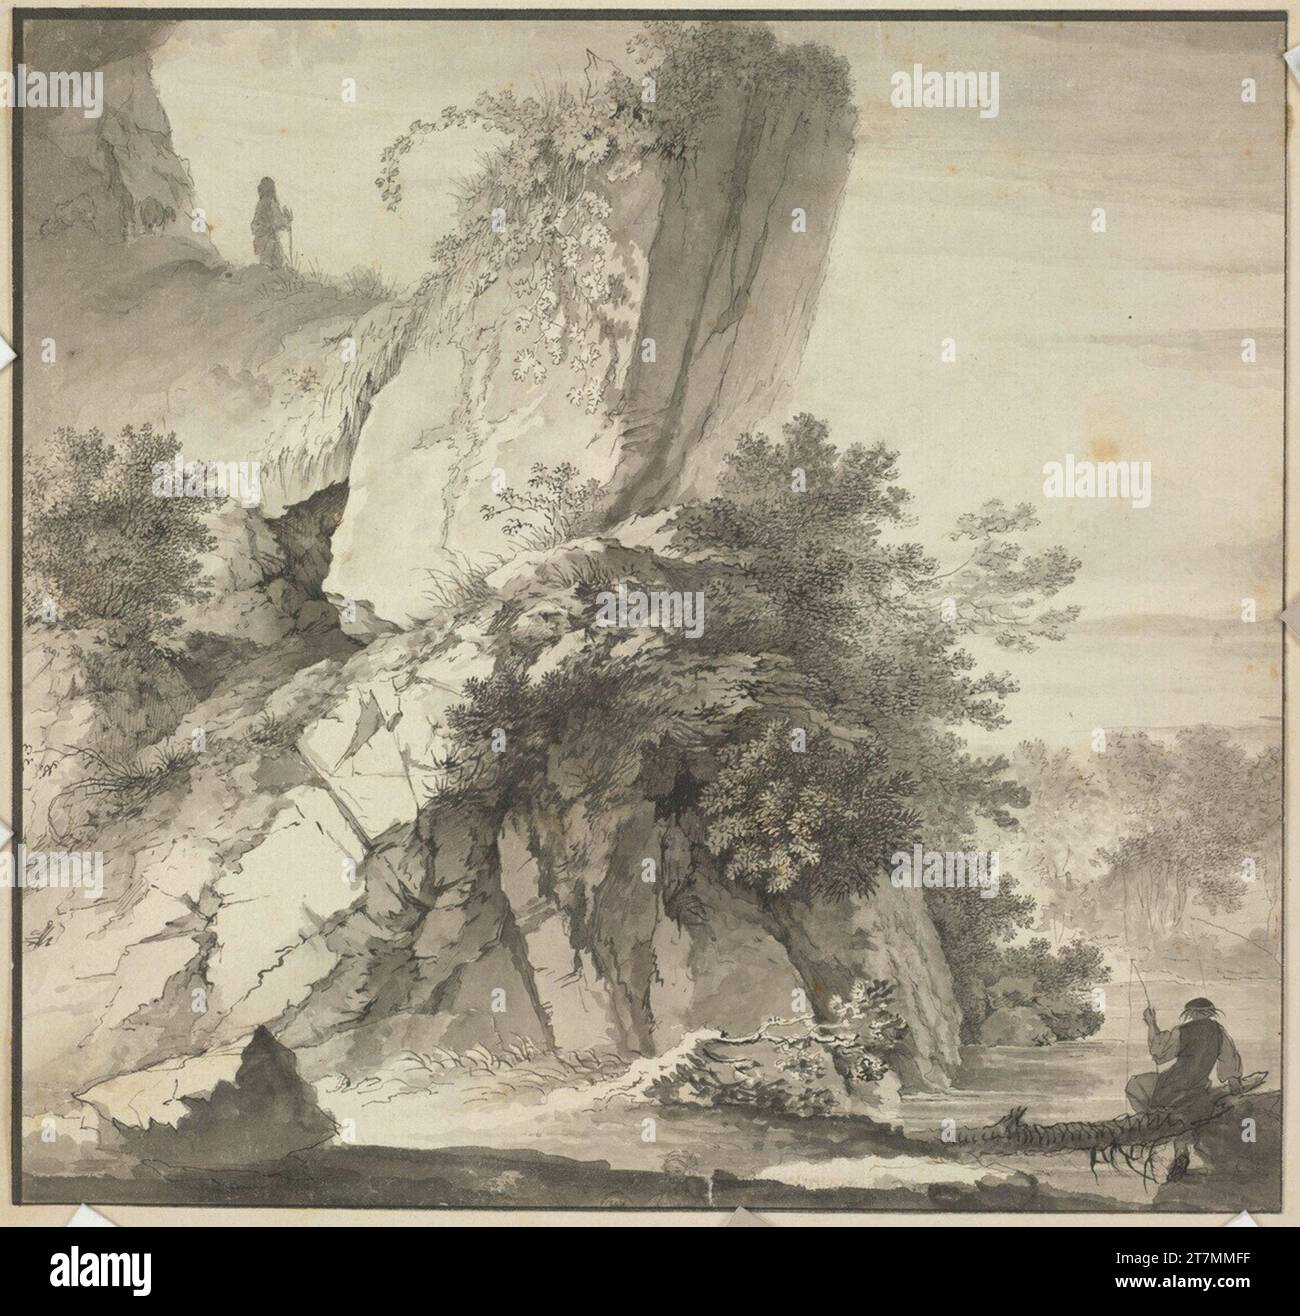 Deodat Roger paesaggio roccioso su un fiume, in primo piano un pescatore. Feder e pennello in nero, grigio e nero laves su carta, linea di bordo in inchiostro nero 1733 , 1733 Foto Stock